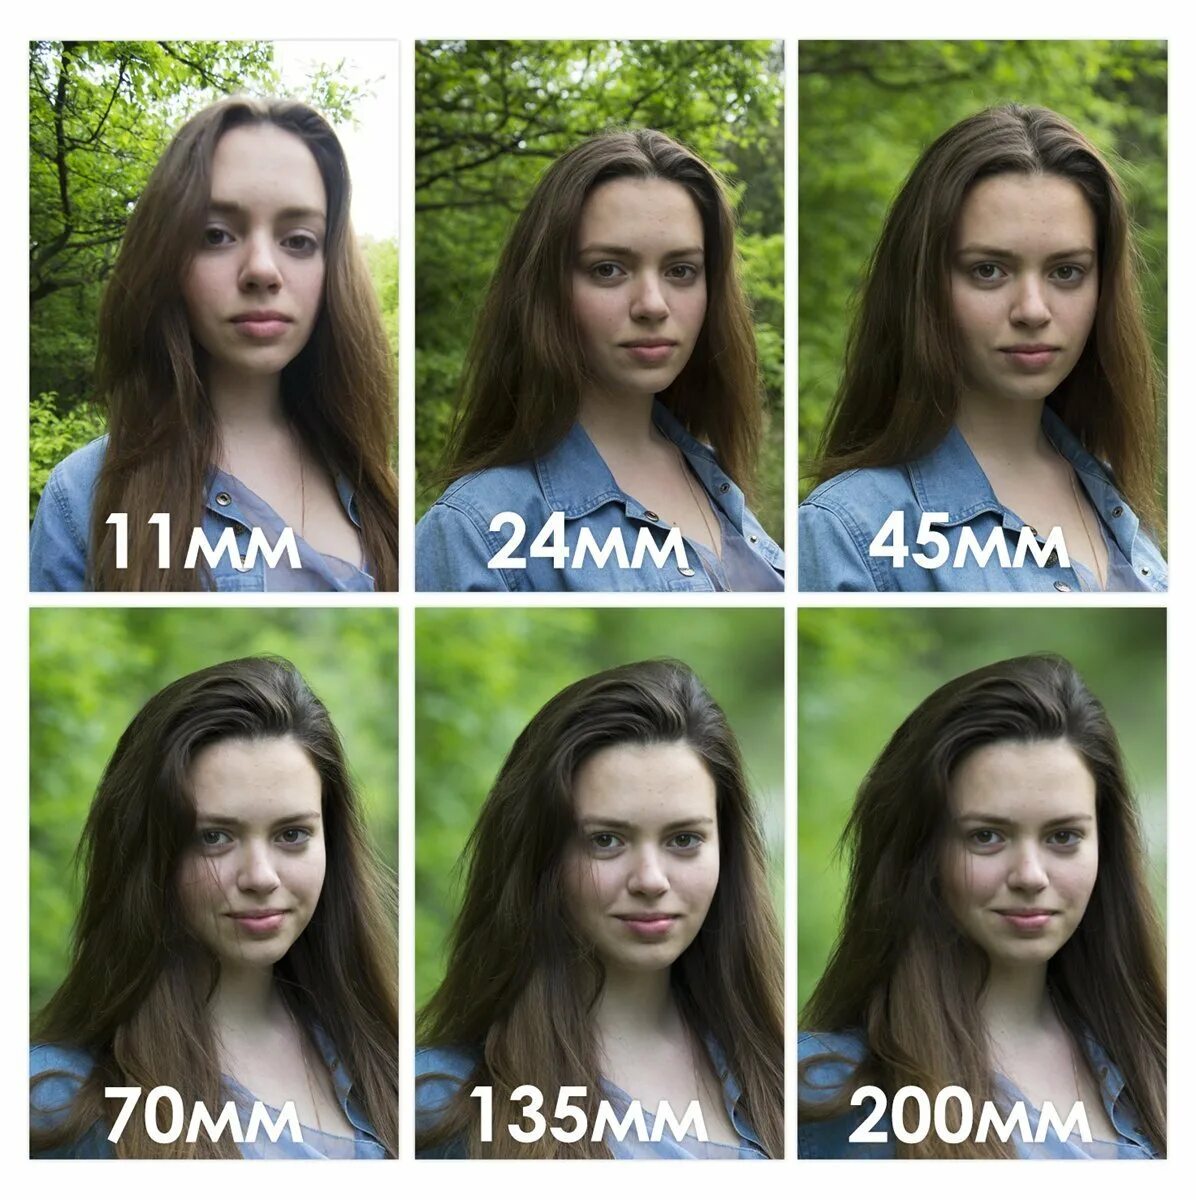 Разница 18 12. Портрет на разные объективы. Объектив для портретов. Снимки на разном фокусном расстоянии. Примеры фотографий с разным фокусным расстоянием.